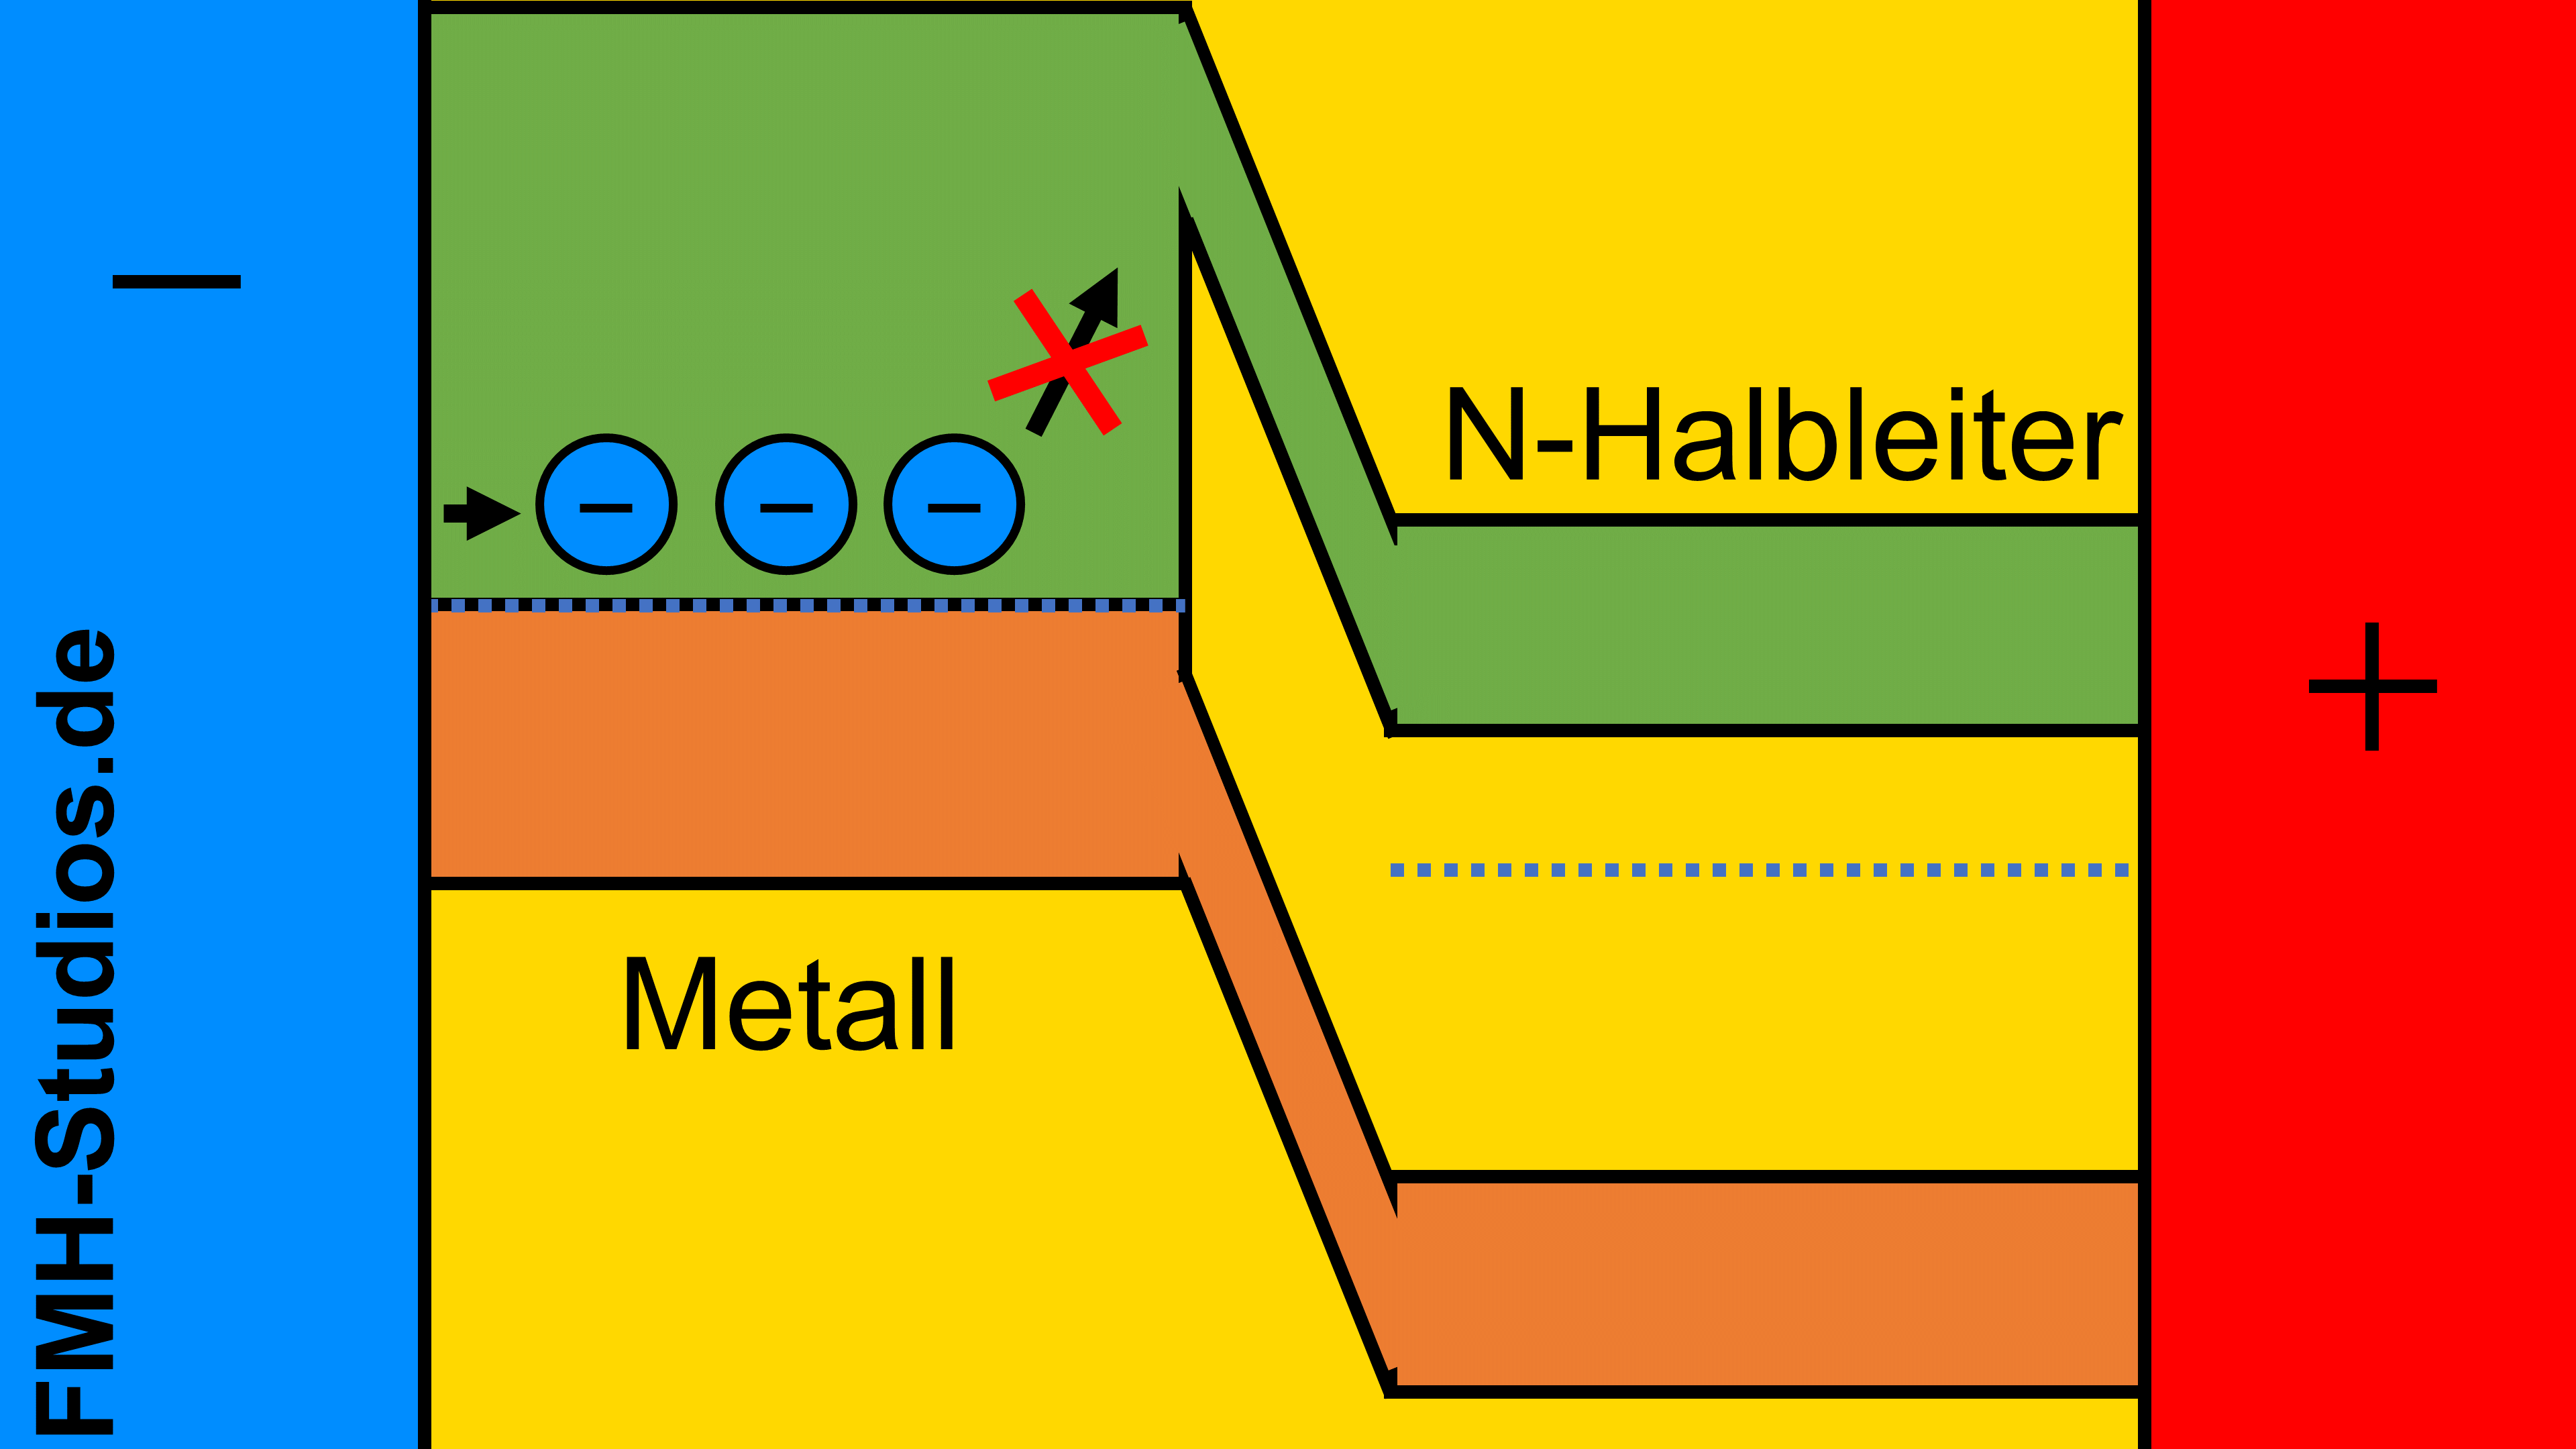 Diode - Halbleiter - PN-Übergang – Metall-Halbleiter-Übergang - Bändermodell – äußere Spannung - Spannungsquelle - Schottky-Kontakt - Sperrpolung - Elektronen